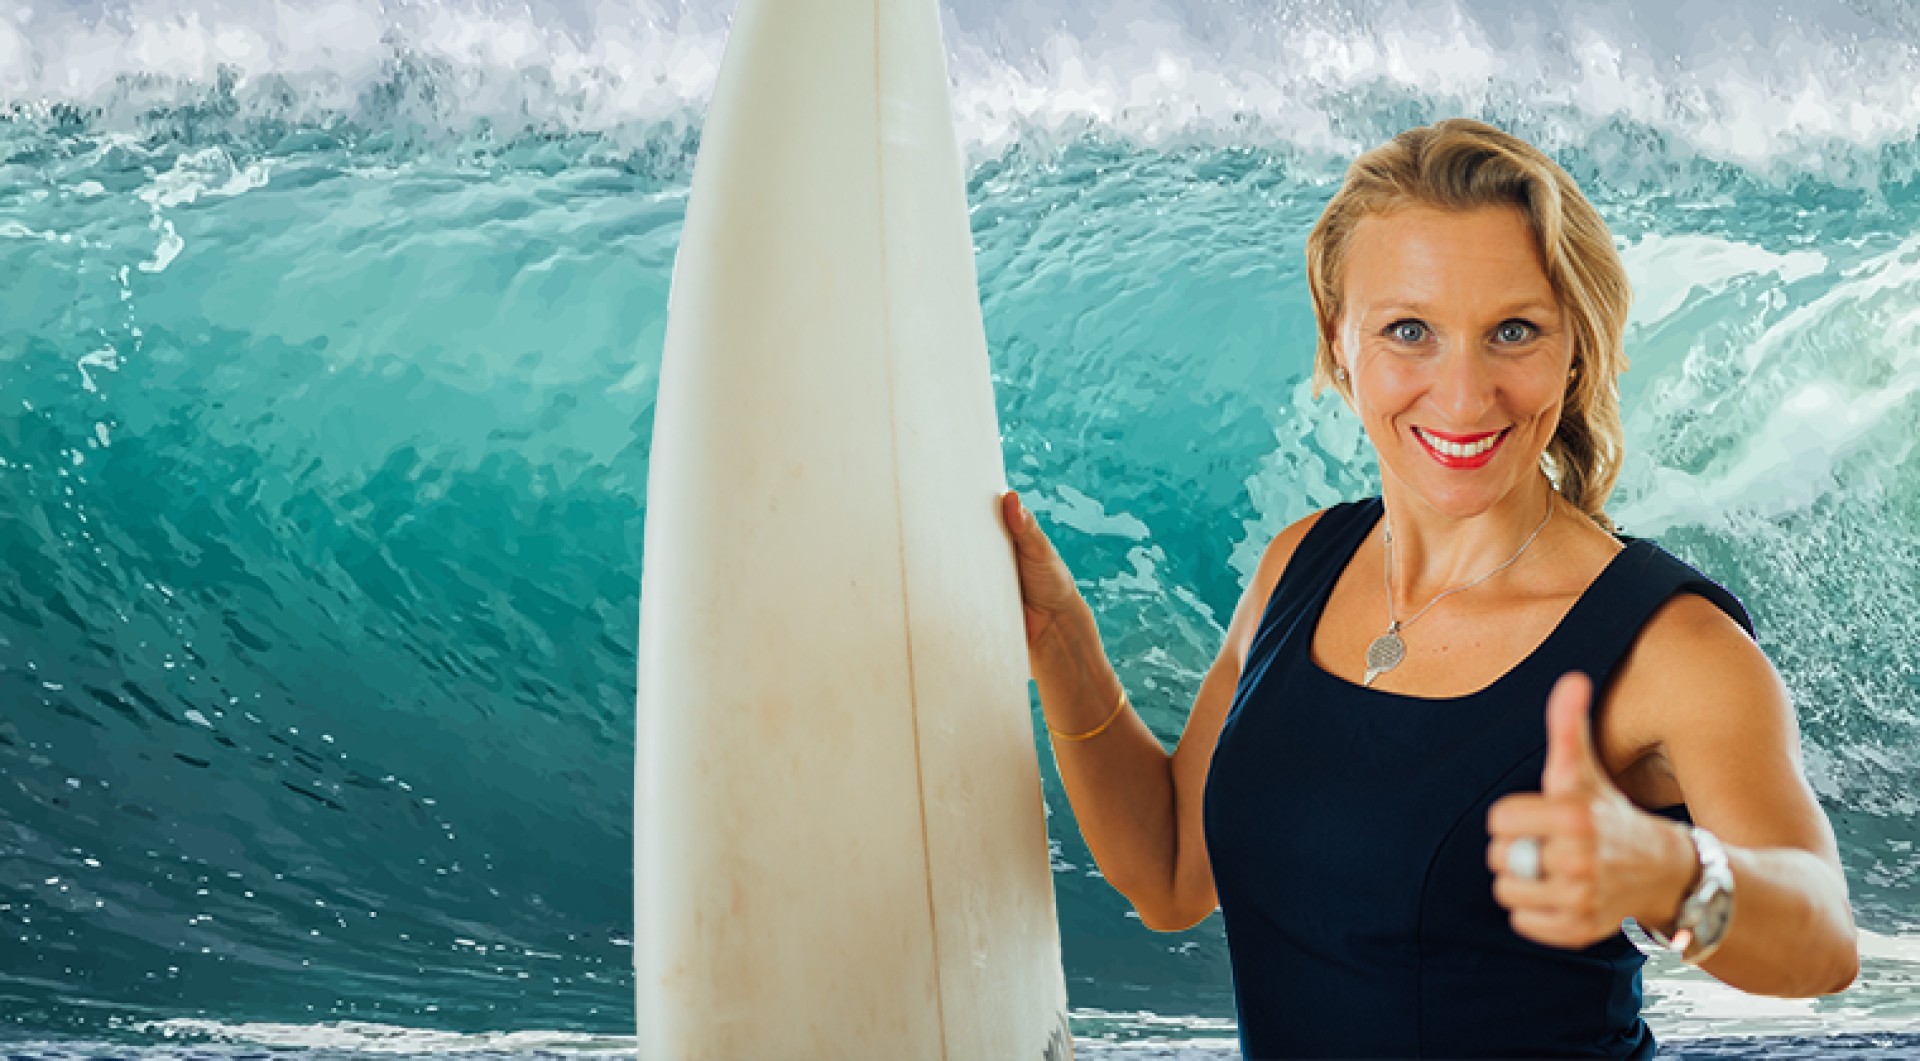 Surf your life -8-Wochen-Programm